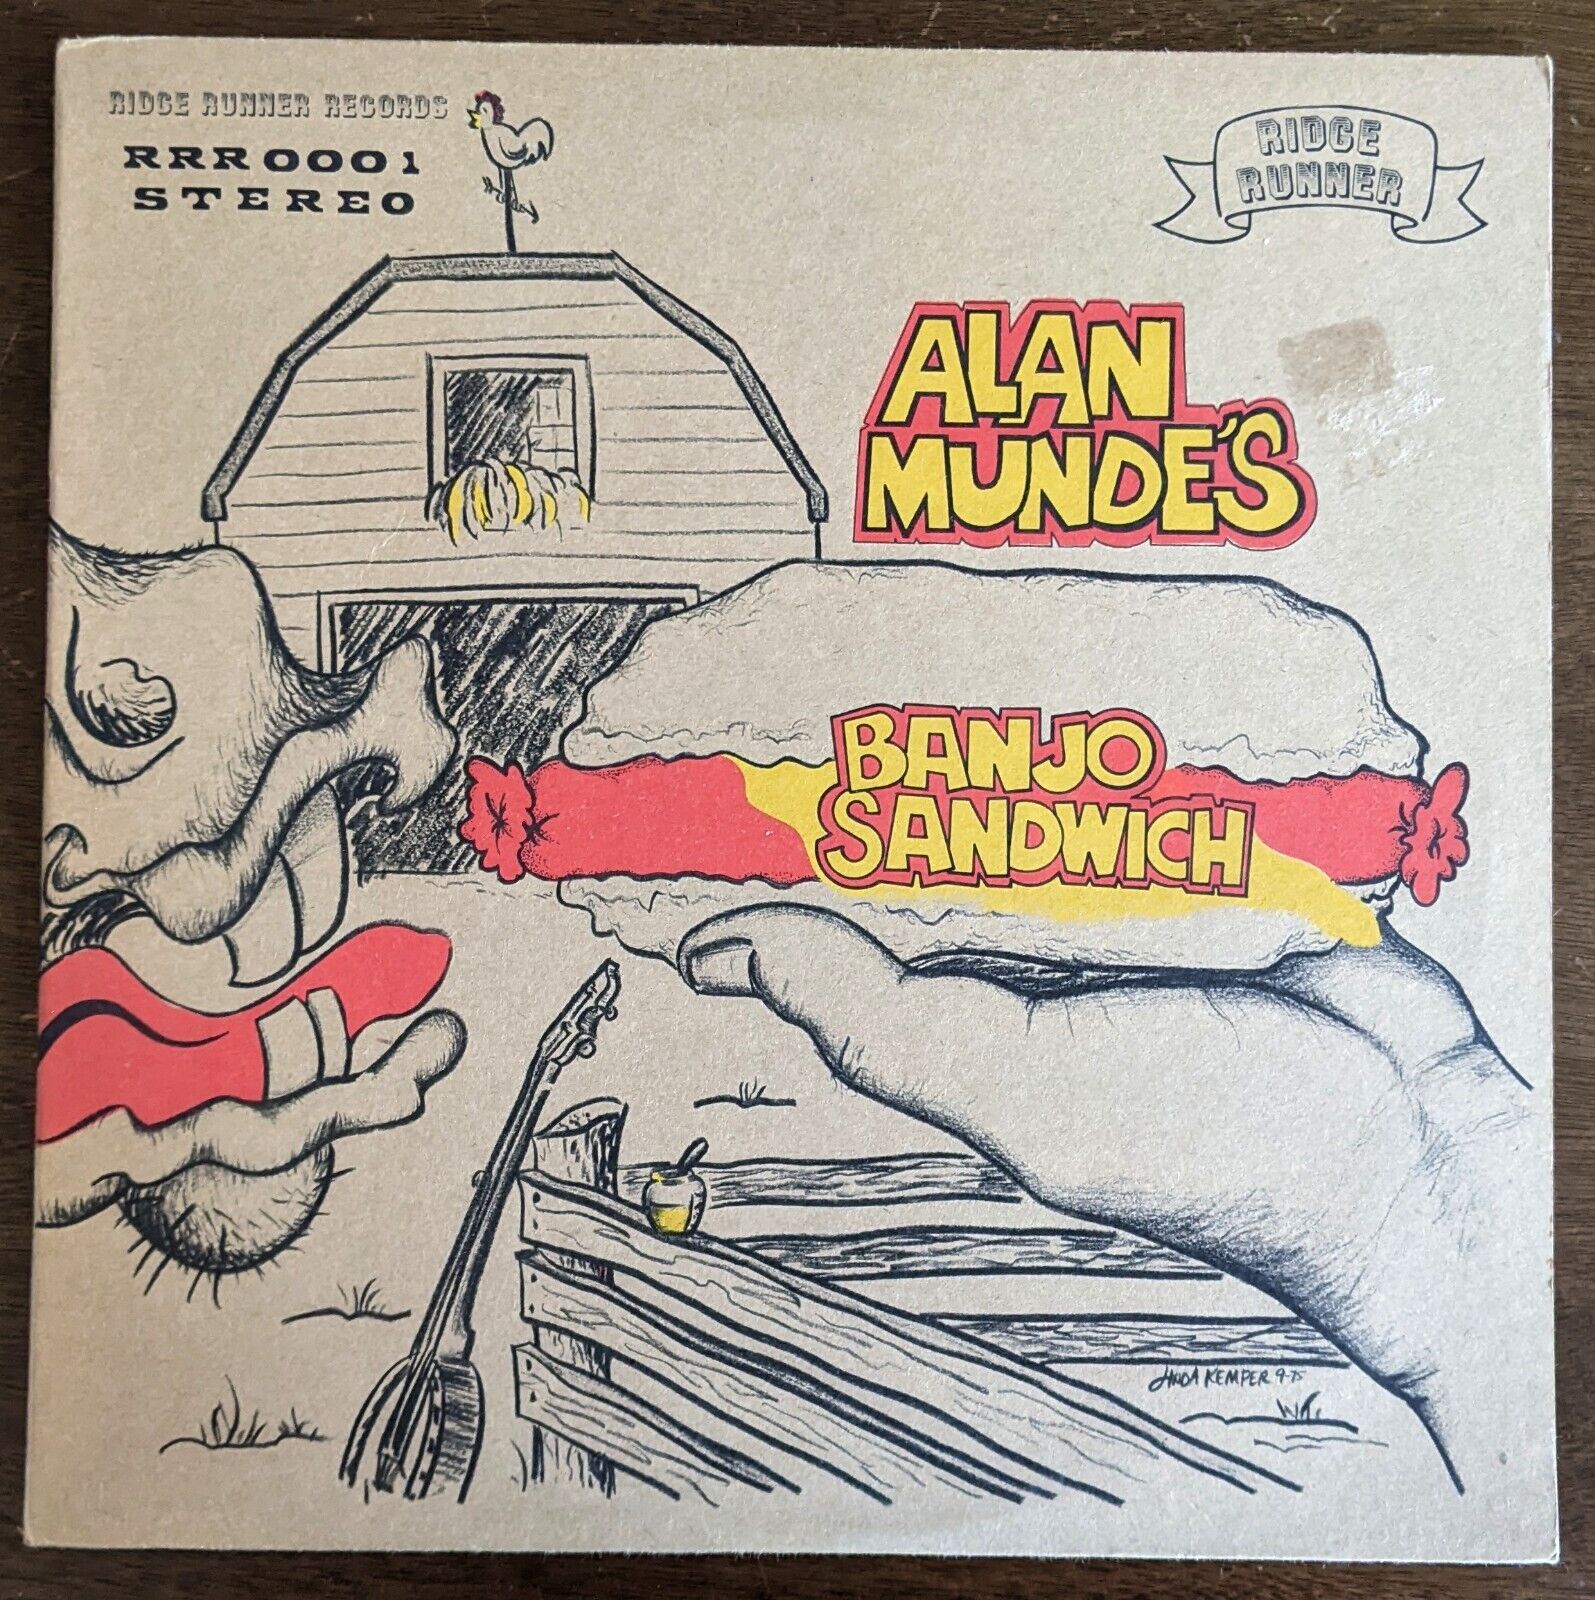 Alan Munde's Banjo Sandwich- RRR 0001 * VG+* Vintage Vinyl